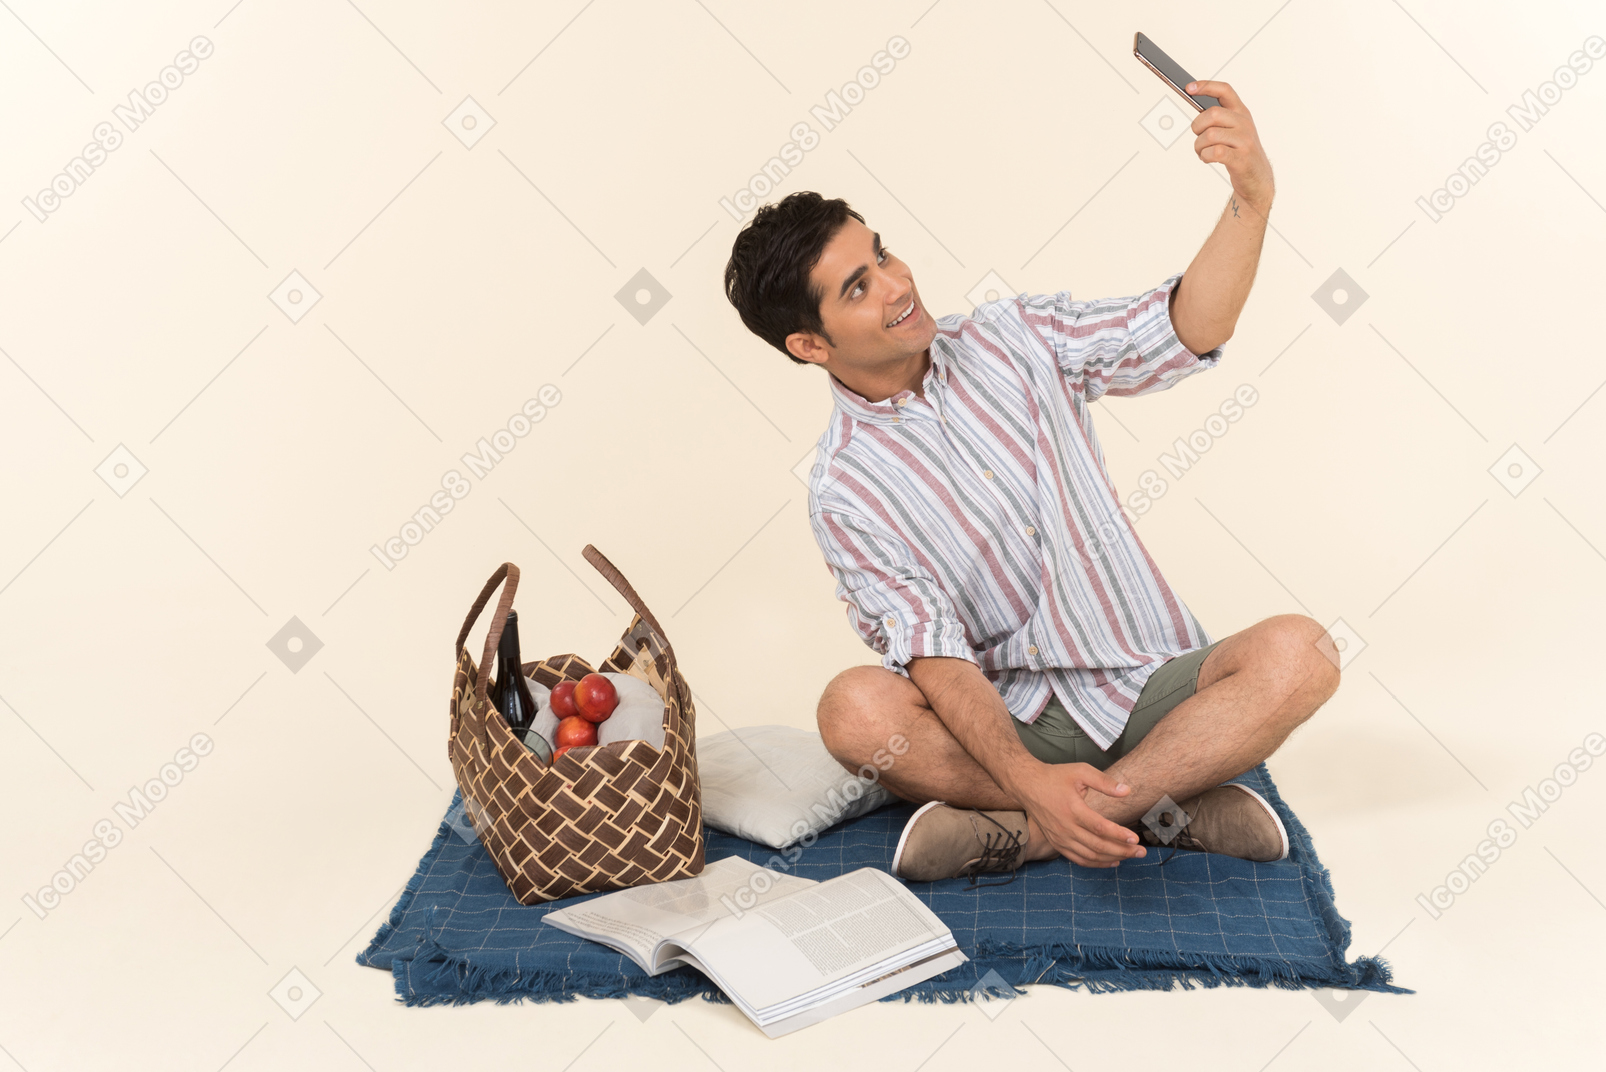 Junger kaukasischer kerl, der auf decke sitzt und ein selfie macht